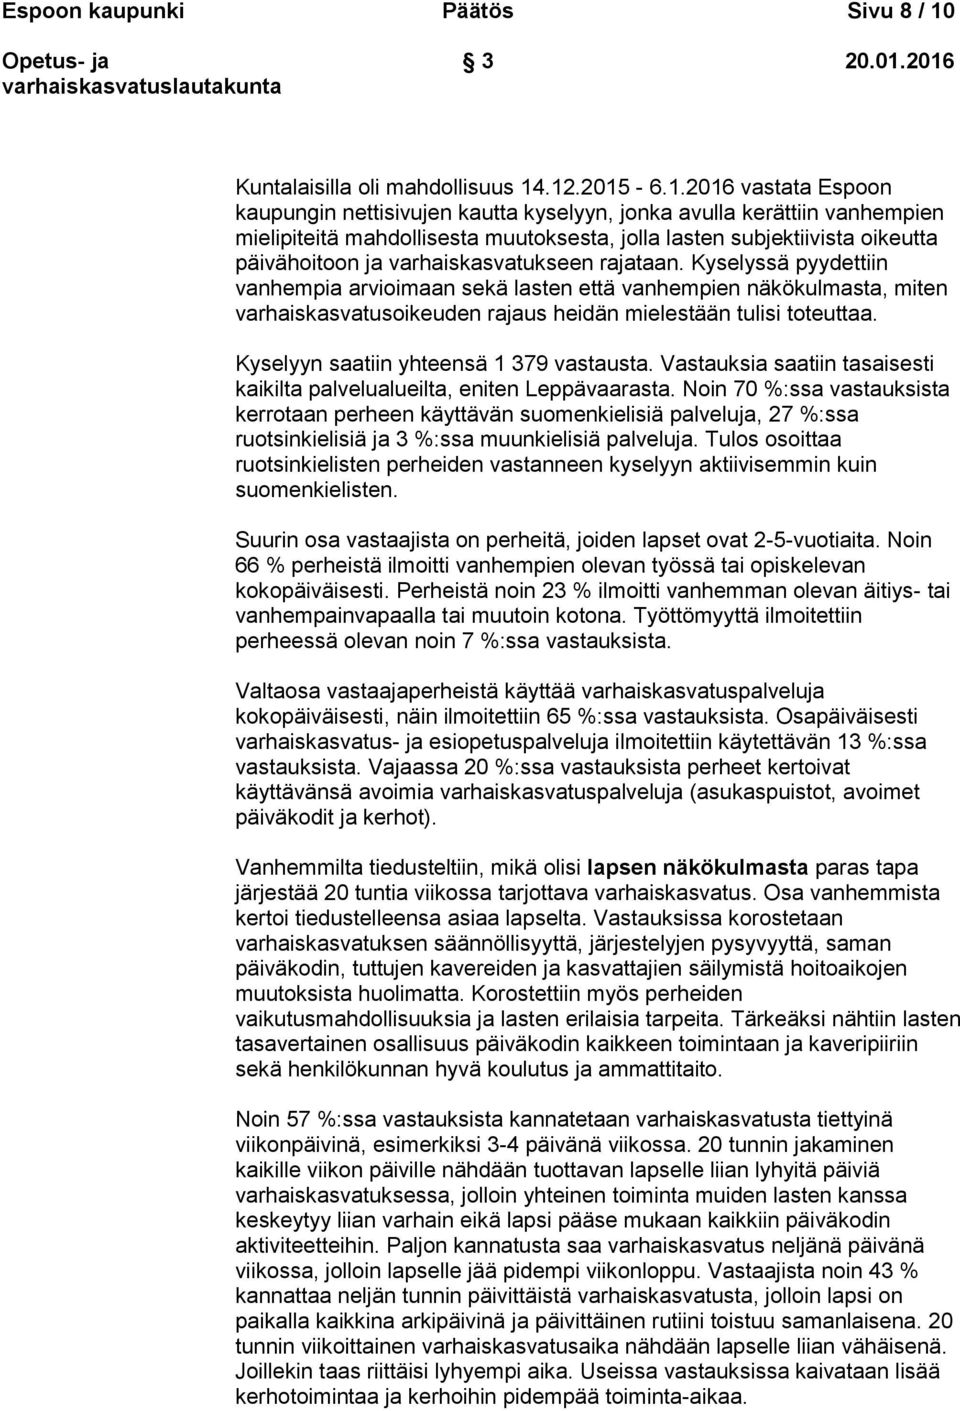 .12.2015-6.1.2016 vastata Espoon kaupungin nettisivujen kautta kyselyyn, jonka avulla kerättiin vanhempien mielipiteitä mahdollisesta muutoksesta, jolla lasten subjektiivista oikeutta päivähoitoon ja